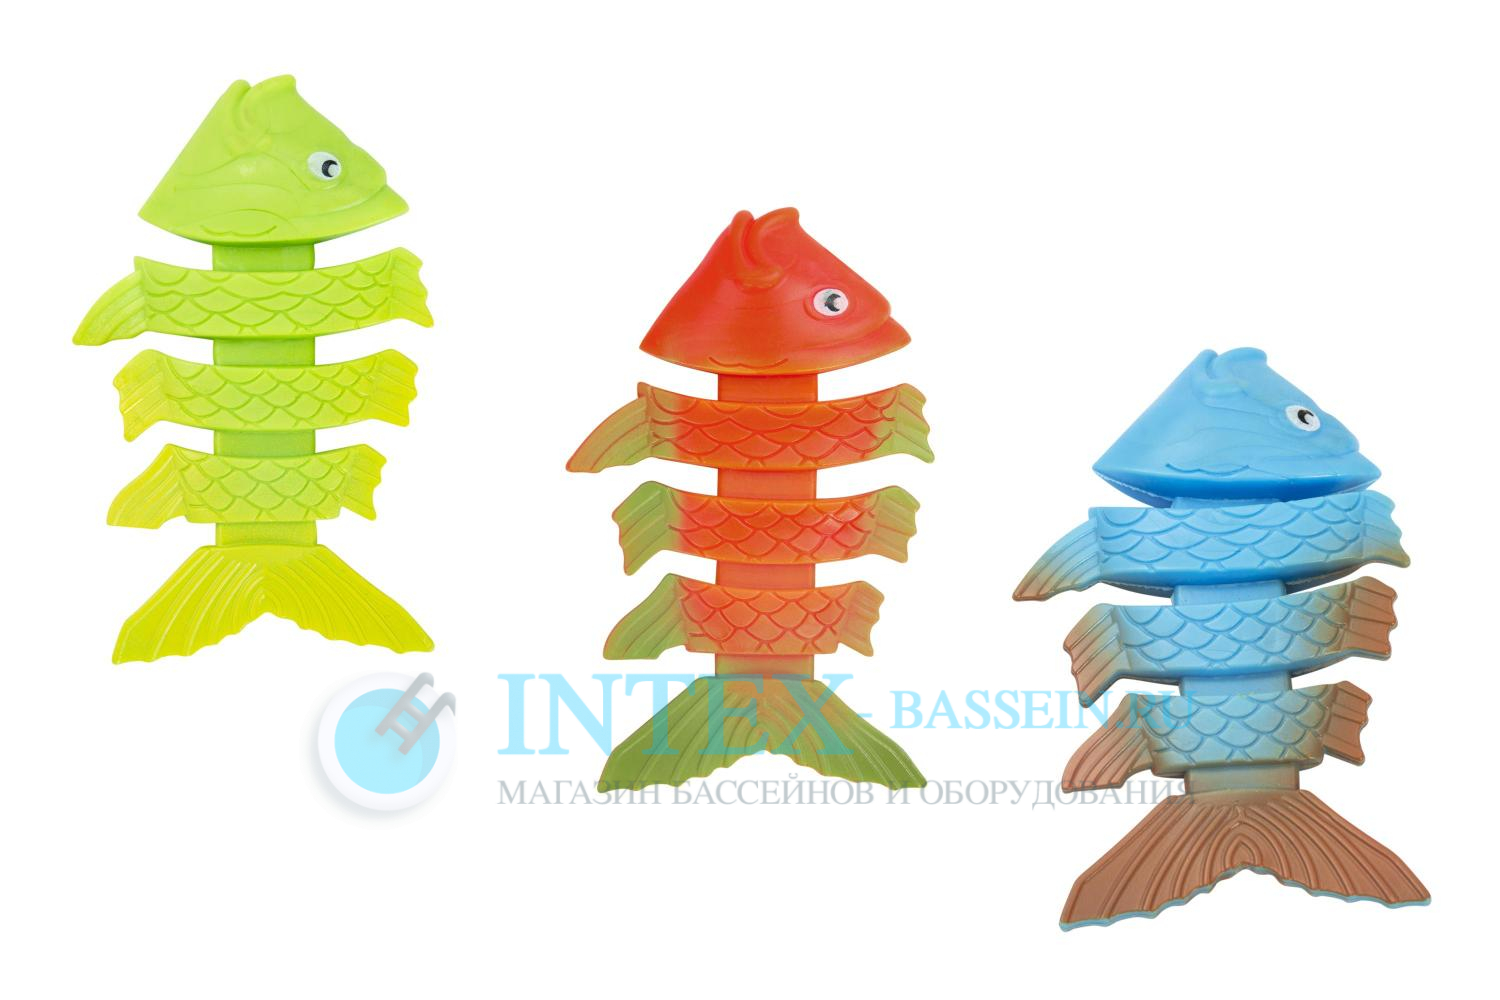 Набор Bestway для подводной игры "Рыбки" 3 цвета, артикул 26029